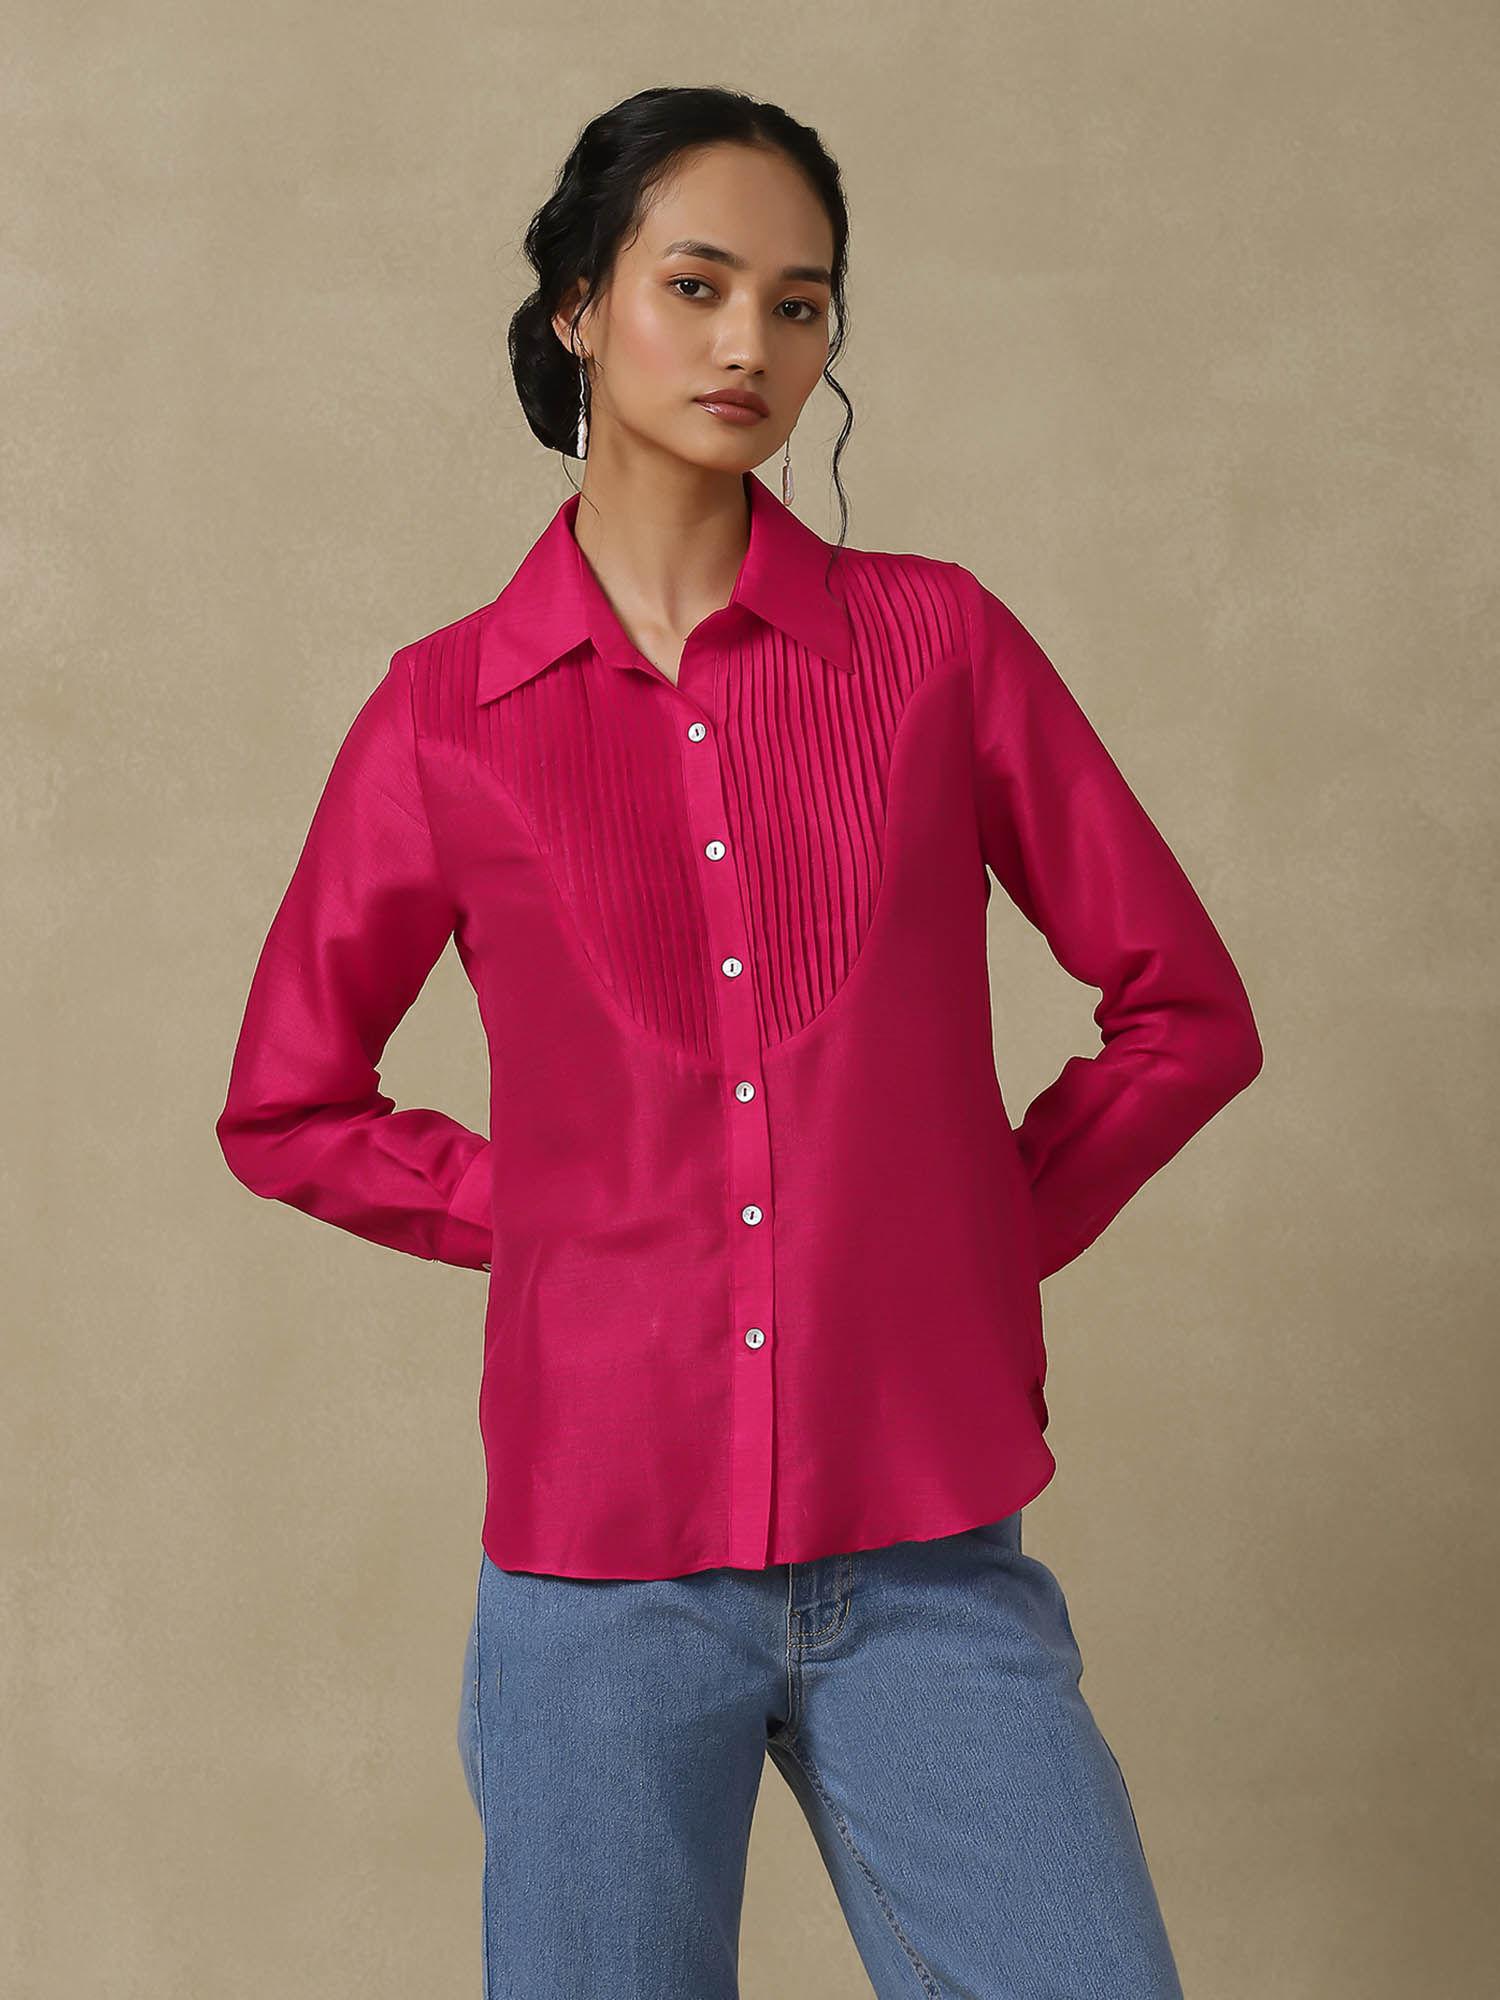 pink textured shirt